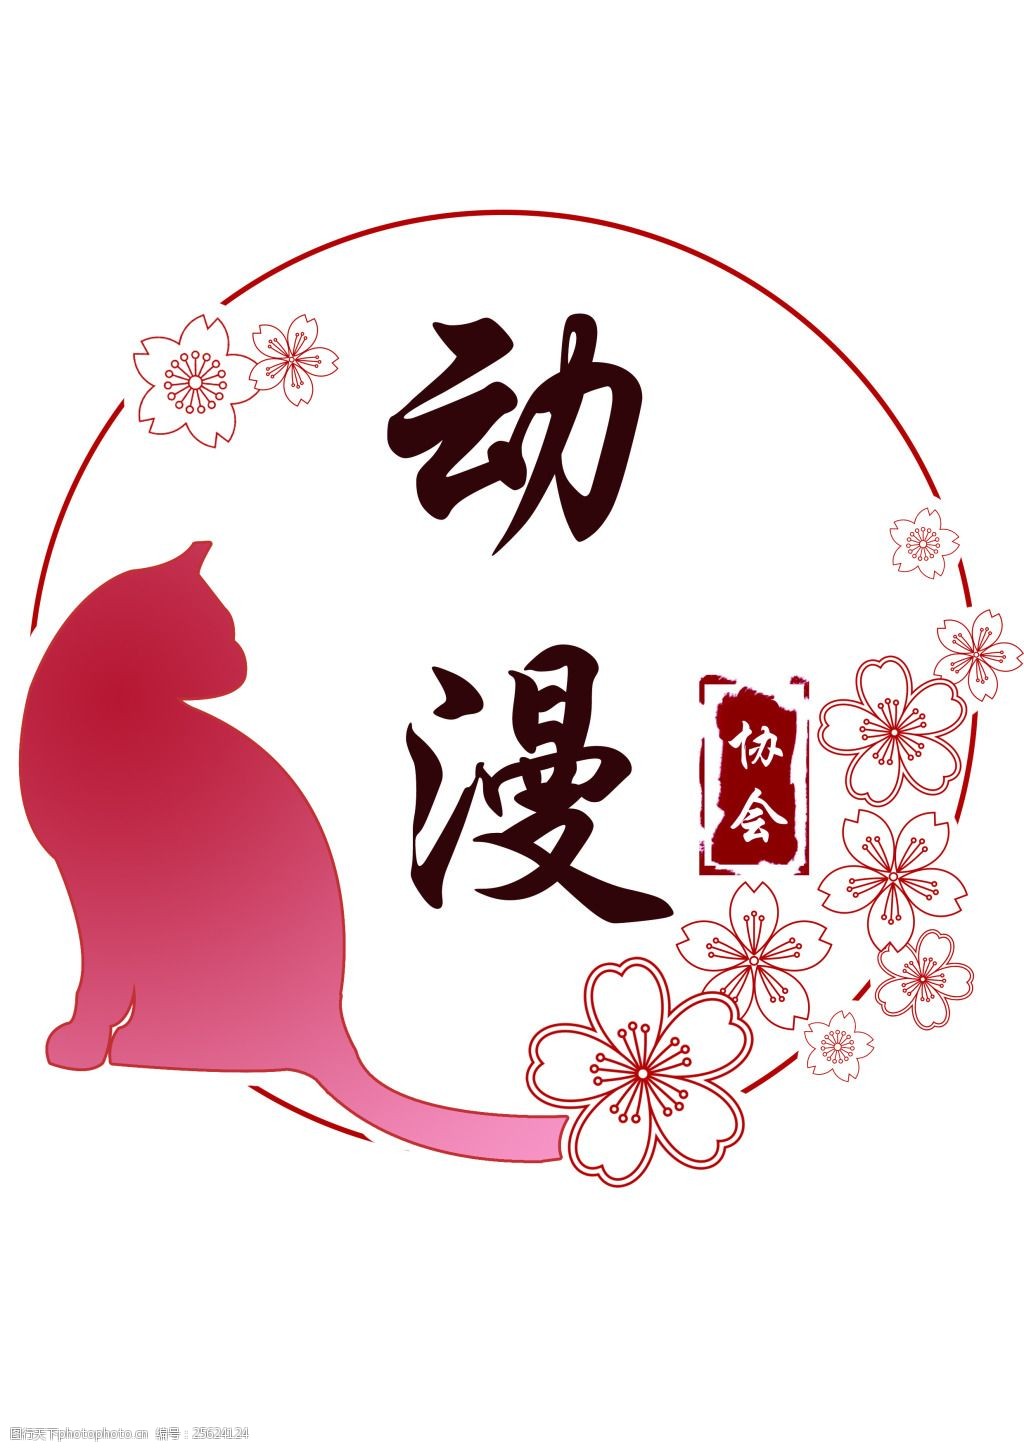 粉色可爱樱花猫动漫社团标志高清psd下载